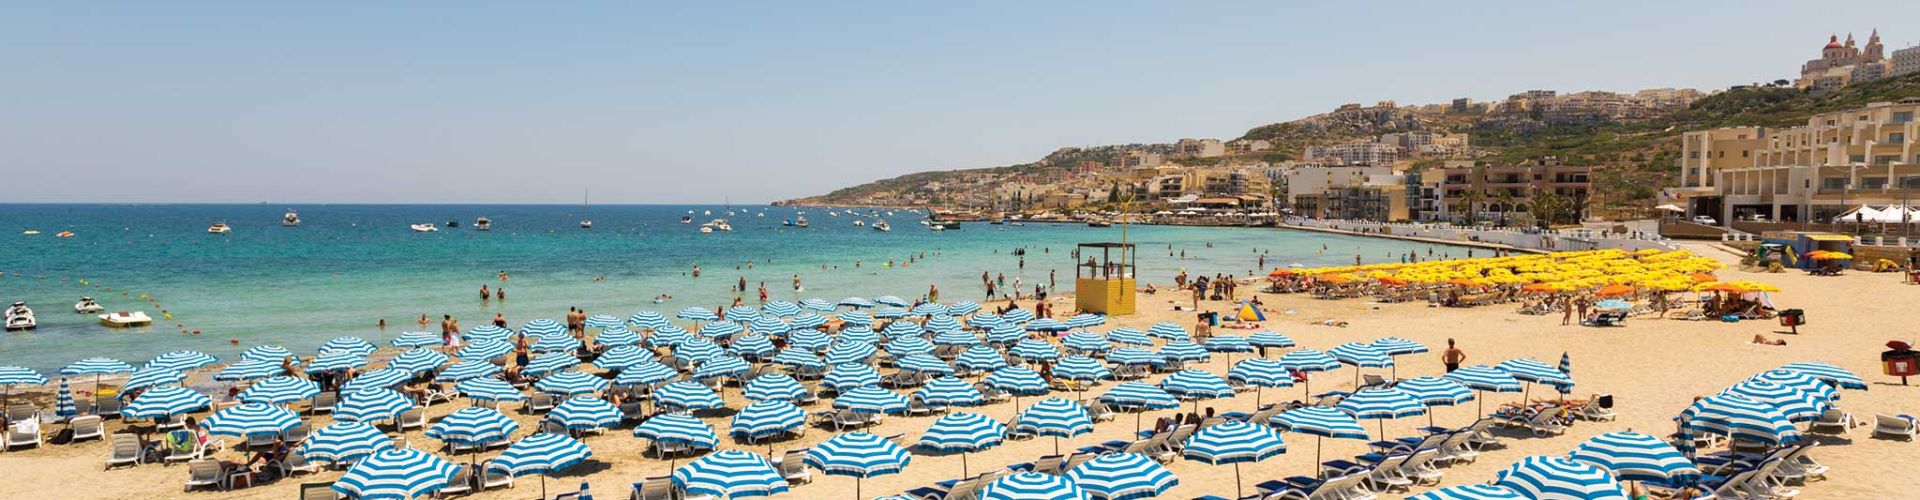 Malta Plaża Mellieha